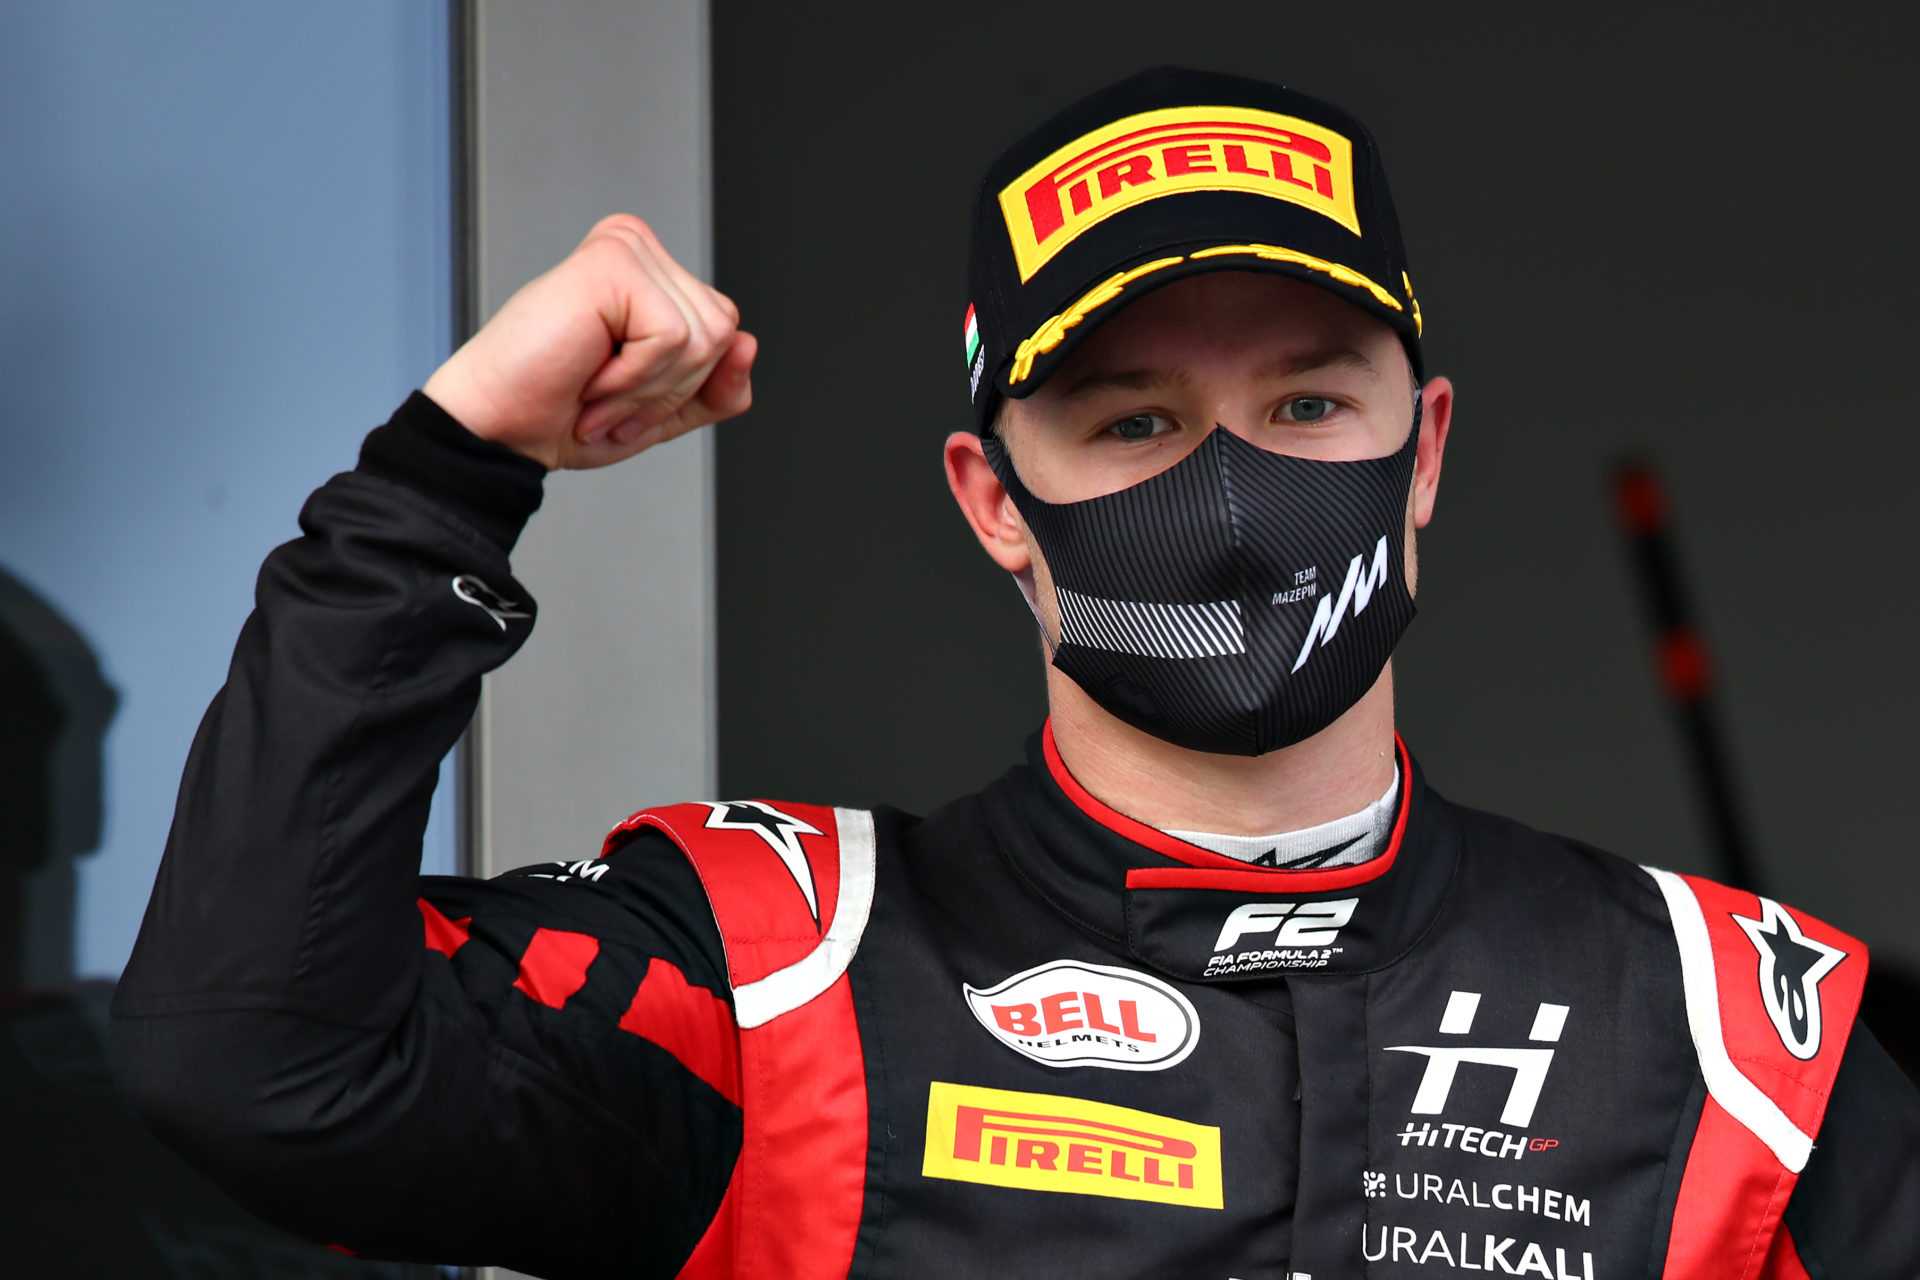 Qui est Nikita Mazepin - Le pilote F2 aurait rejoint Haas F1 en 2021?